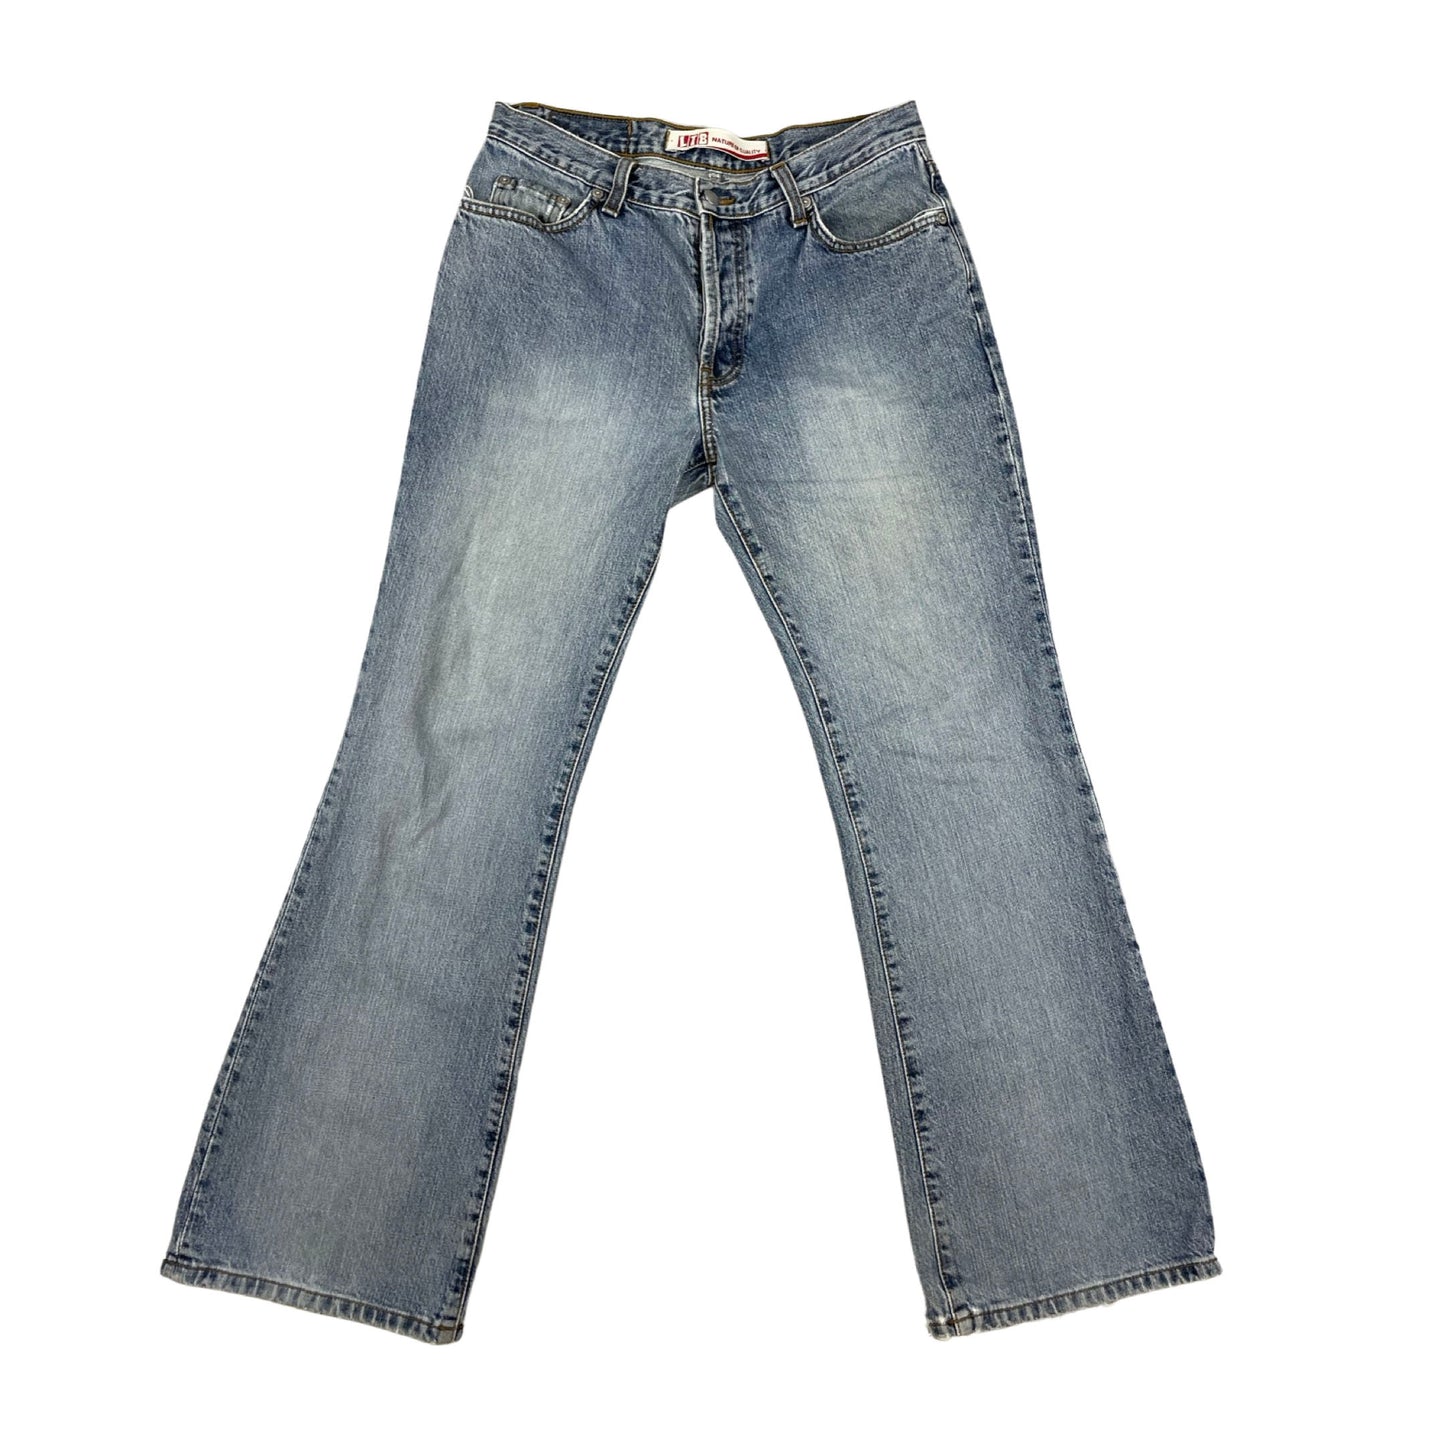 Vintage High Waisted Light Blue Wash Flared Denim Jeans 12